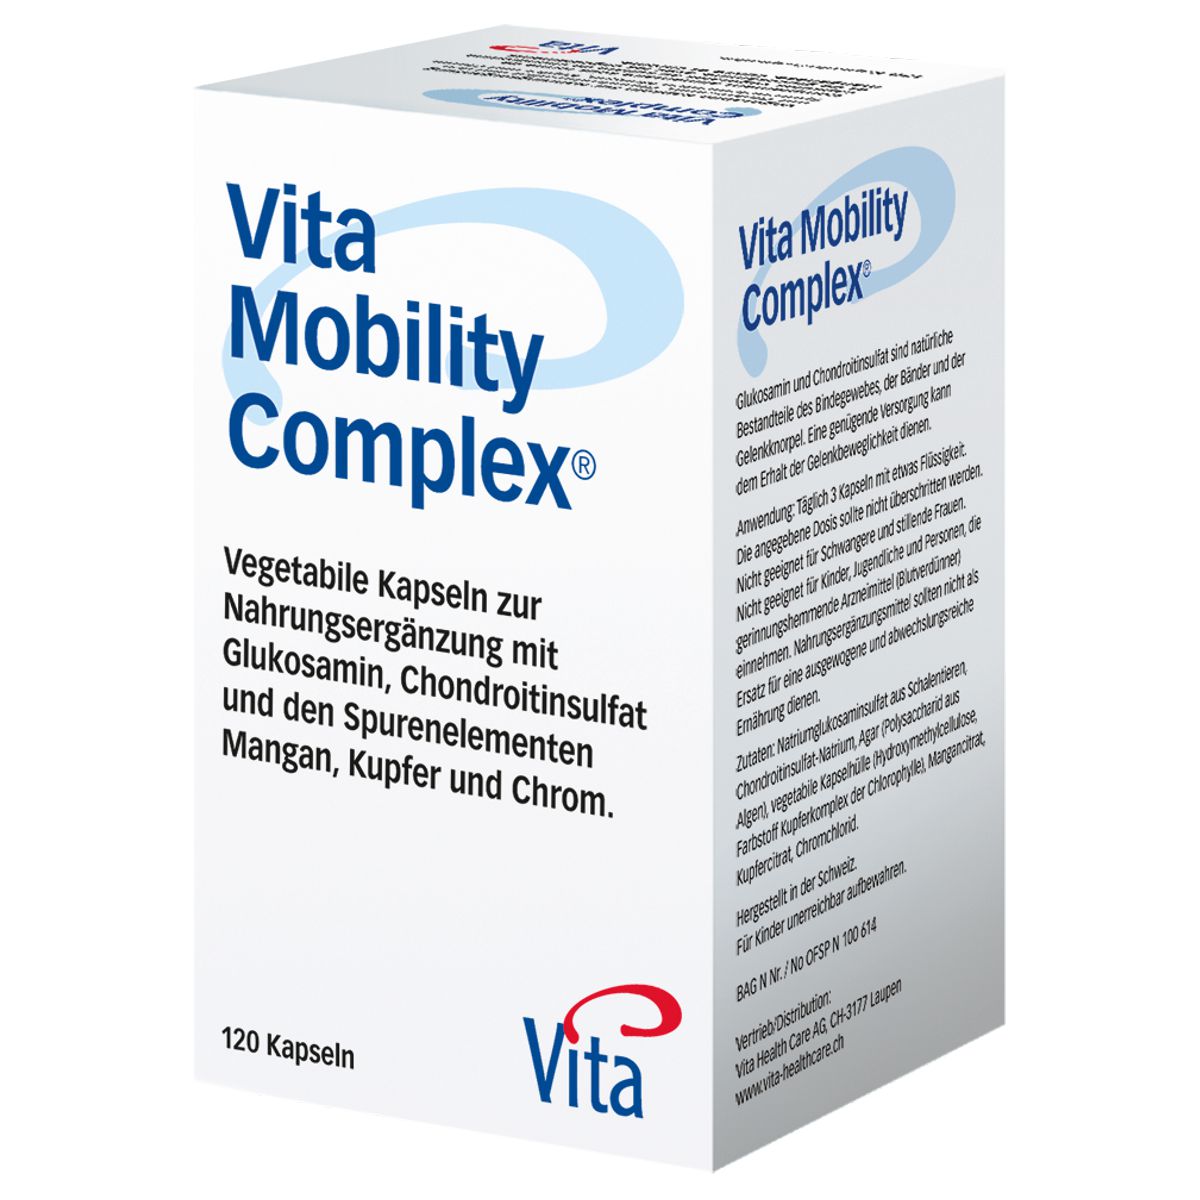 Vita_Mobility_Complex_Kapseln_online_kaufen